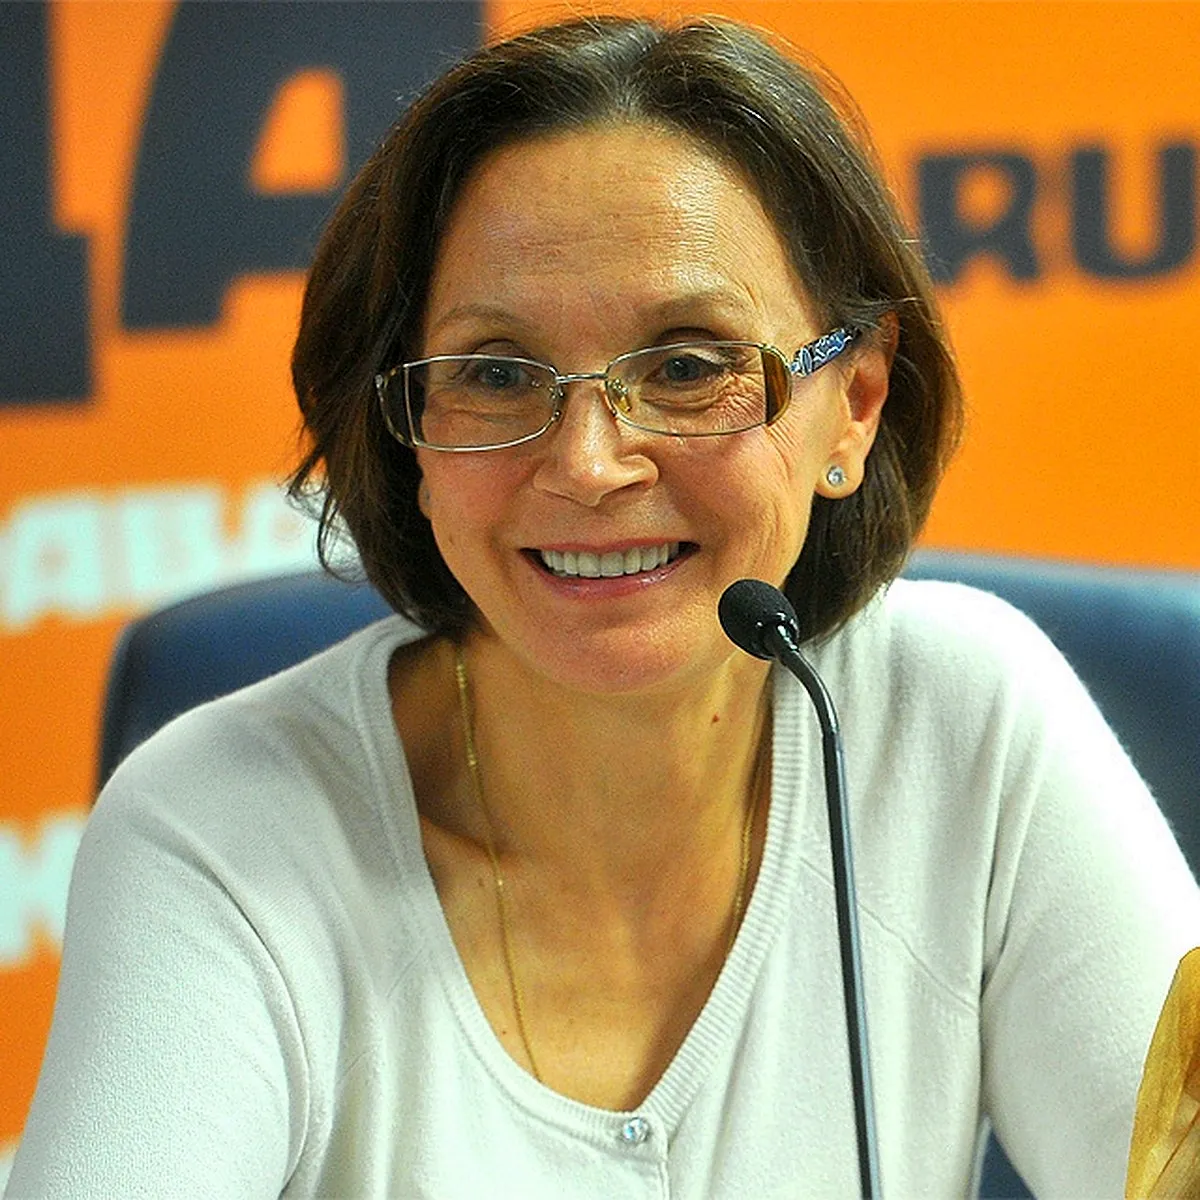 Купченко, Ирина Петровна